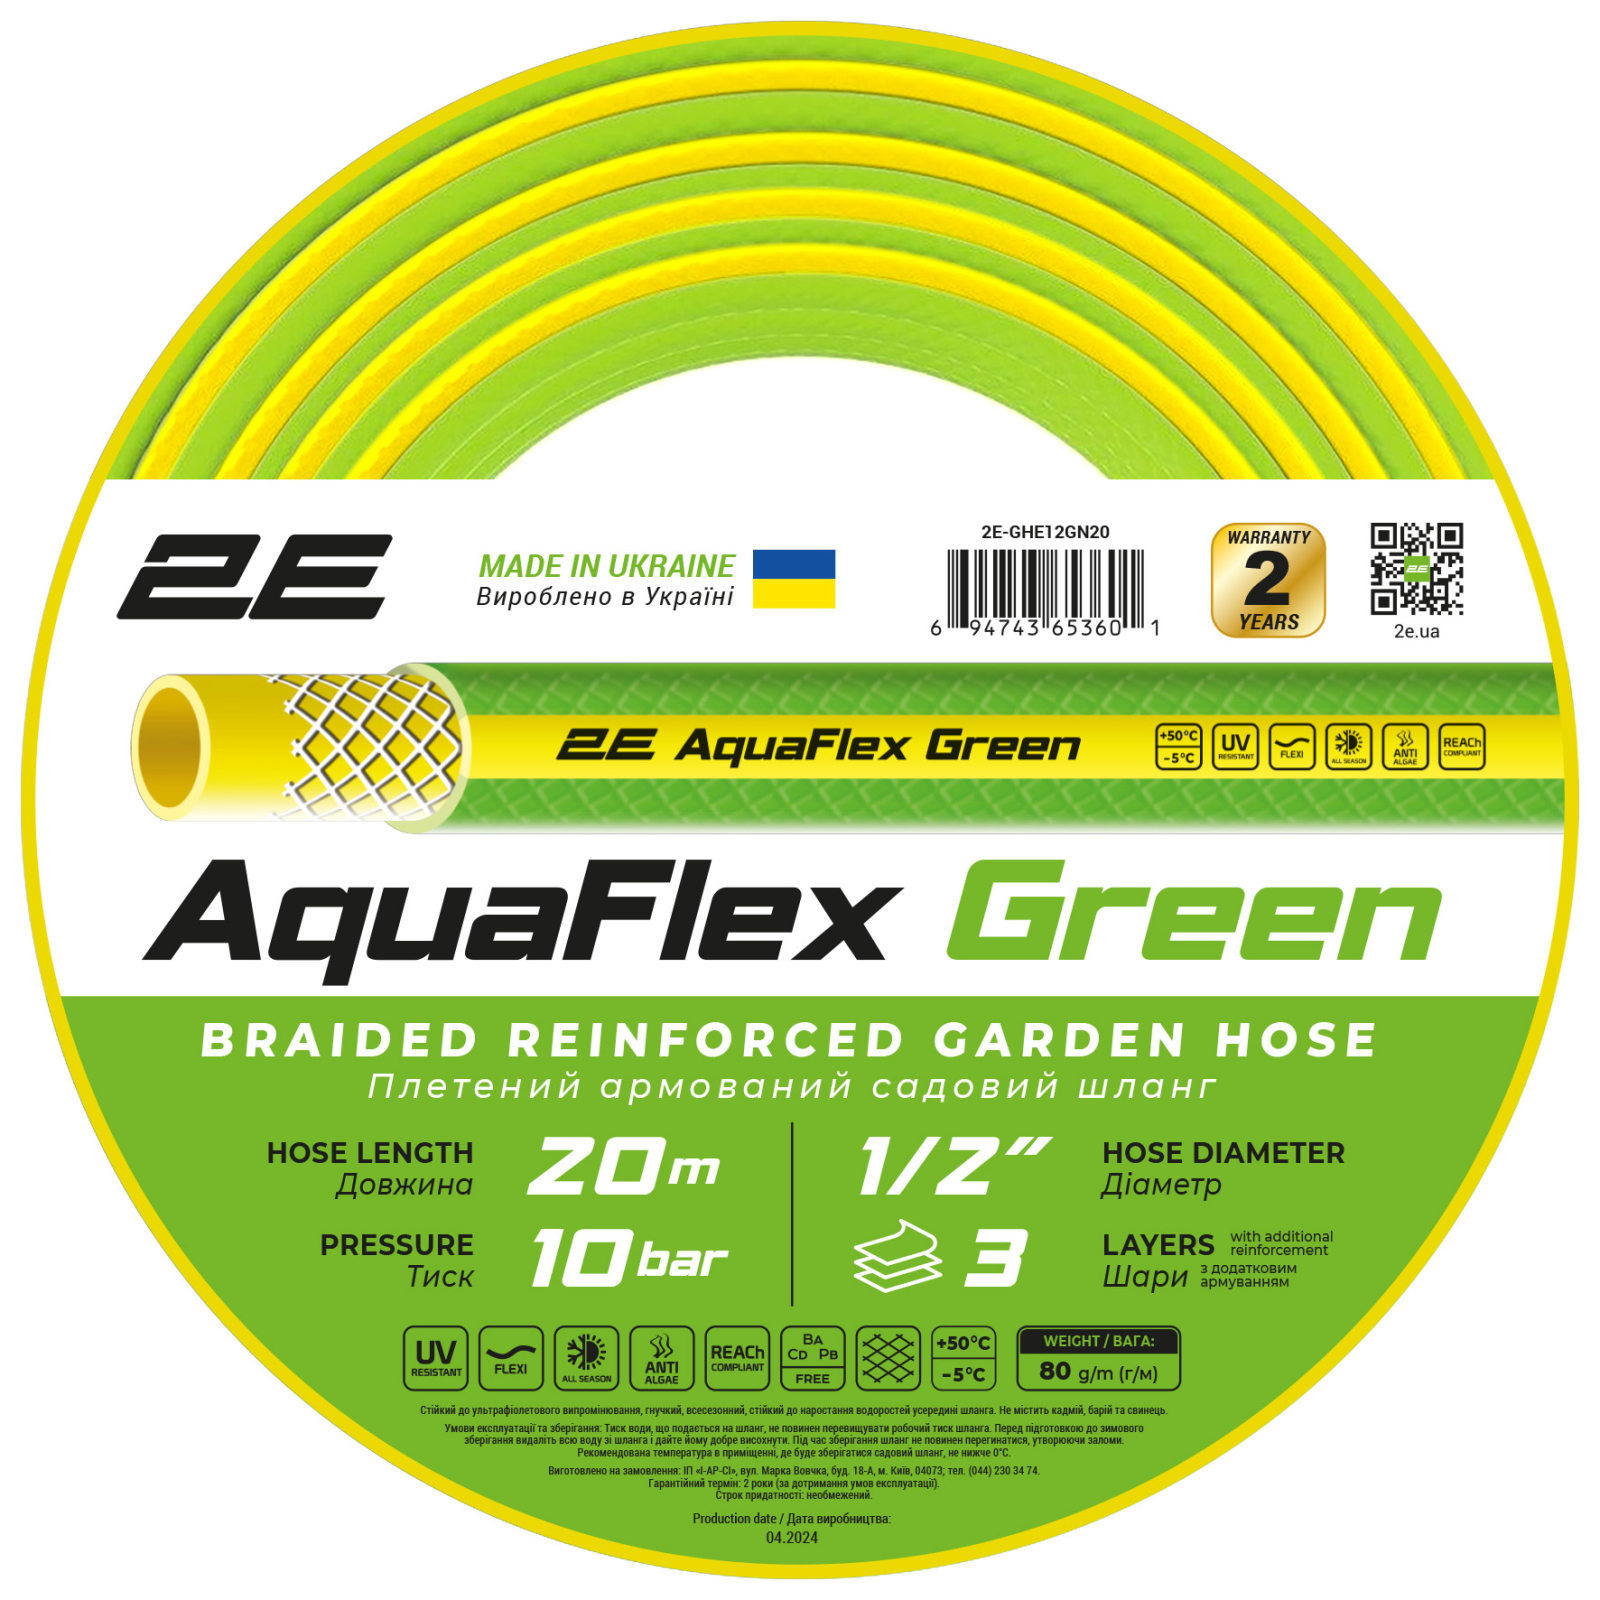 Поливочный шланг 2E AquaFlex Green 1/2", 20м, 3 шари, 10бар, -5+50°C (2E-GHE12GN20)